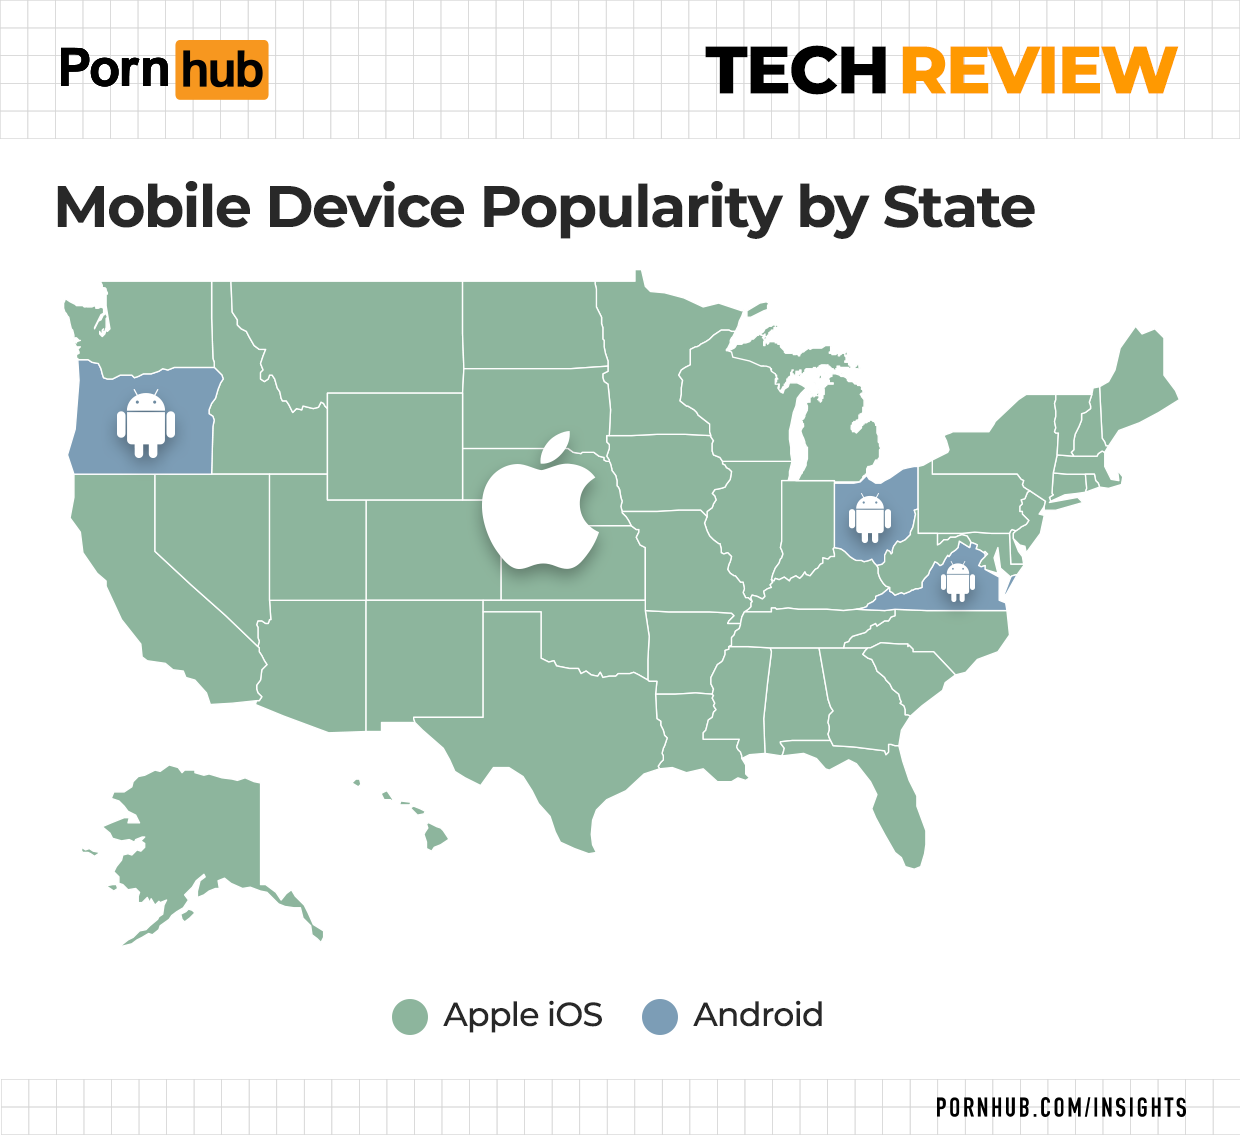 The Pornhub Tech Review